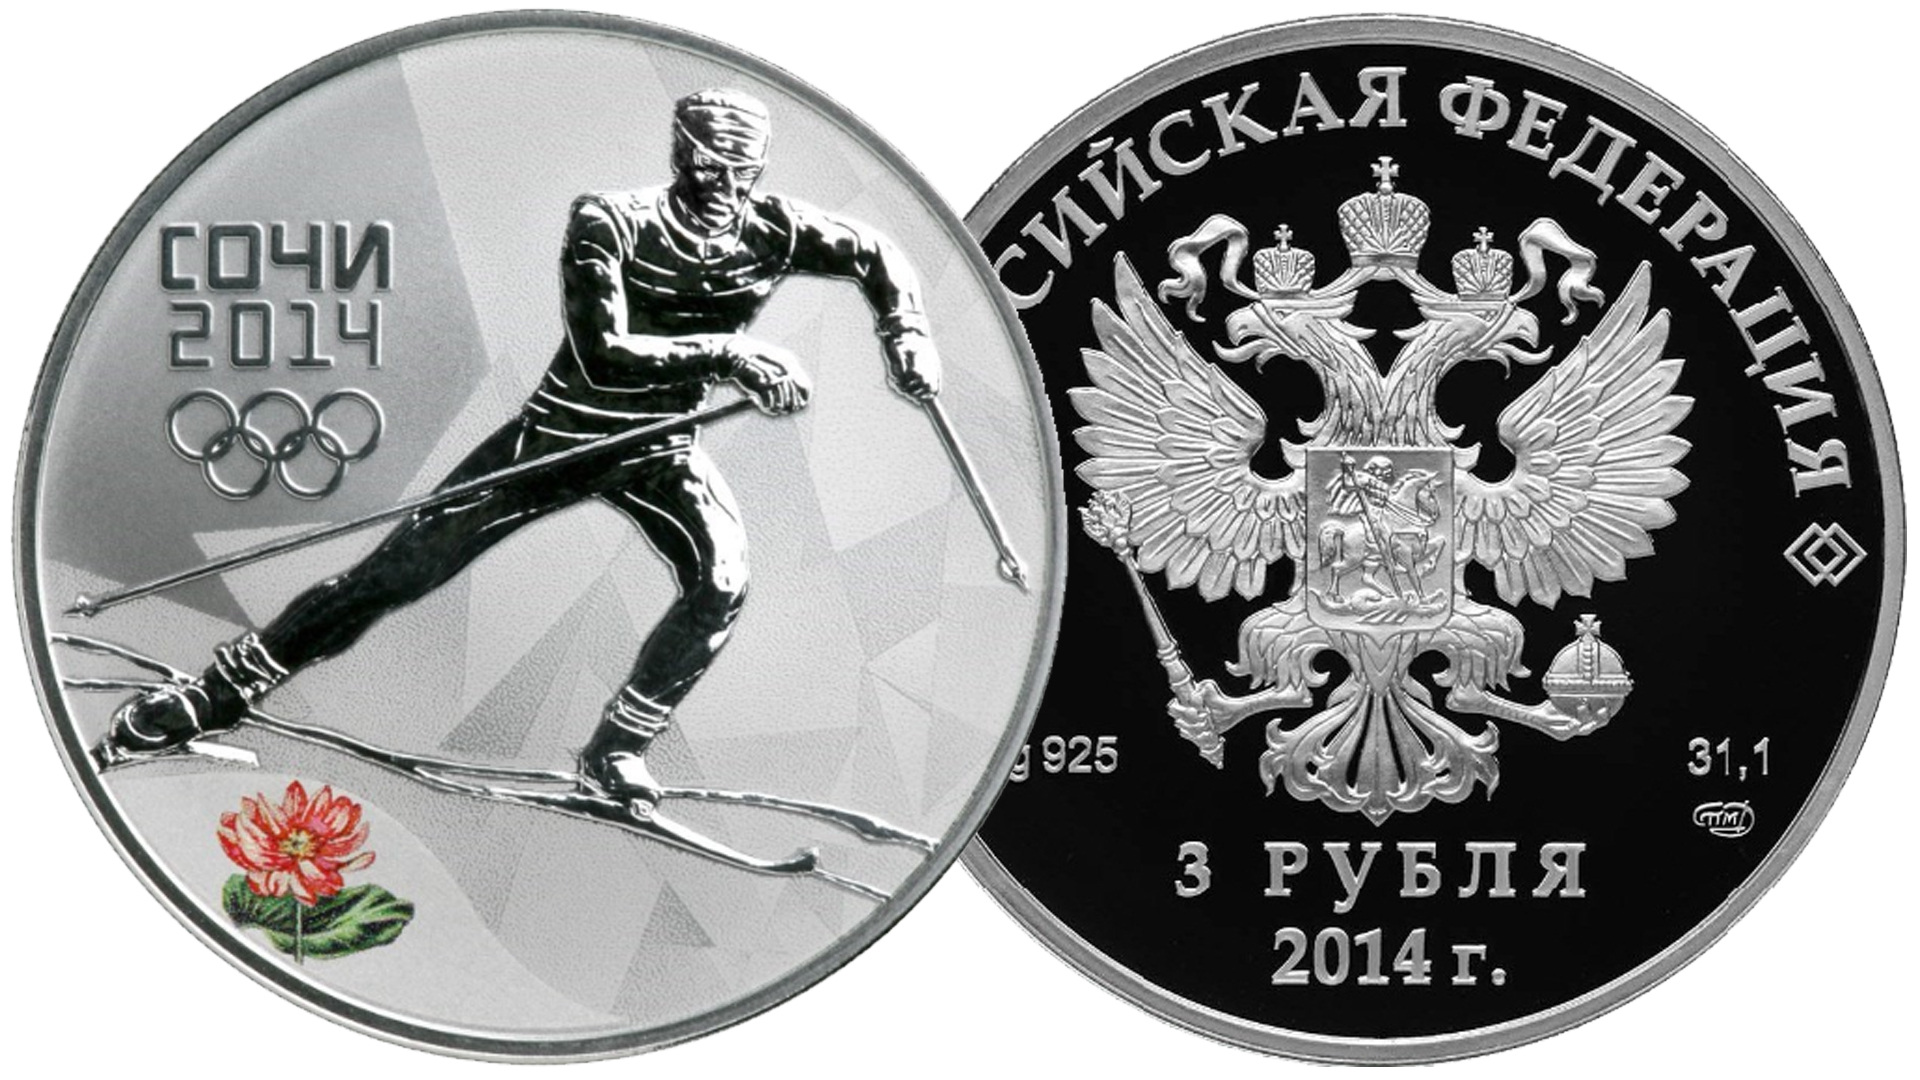 Серебряная монета 3 рубля Сочи 2014. Лыжные гонки. Четвёртый выпуск 2013 год.